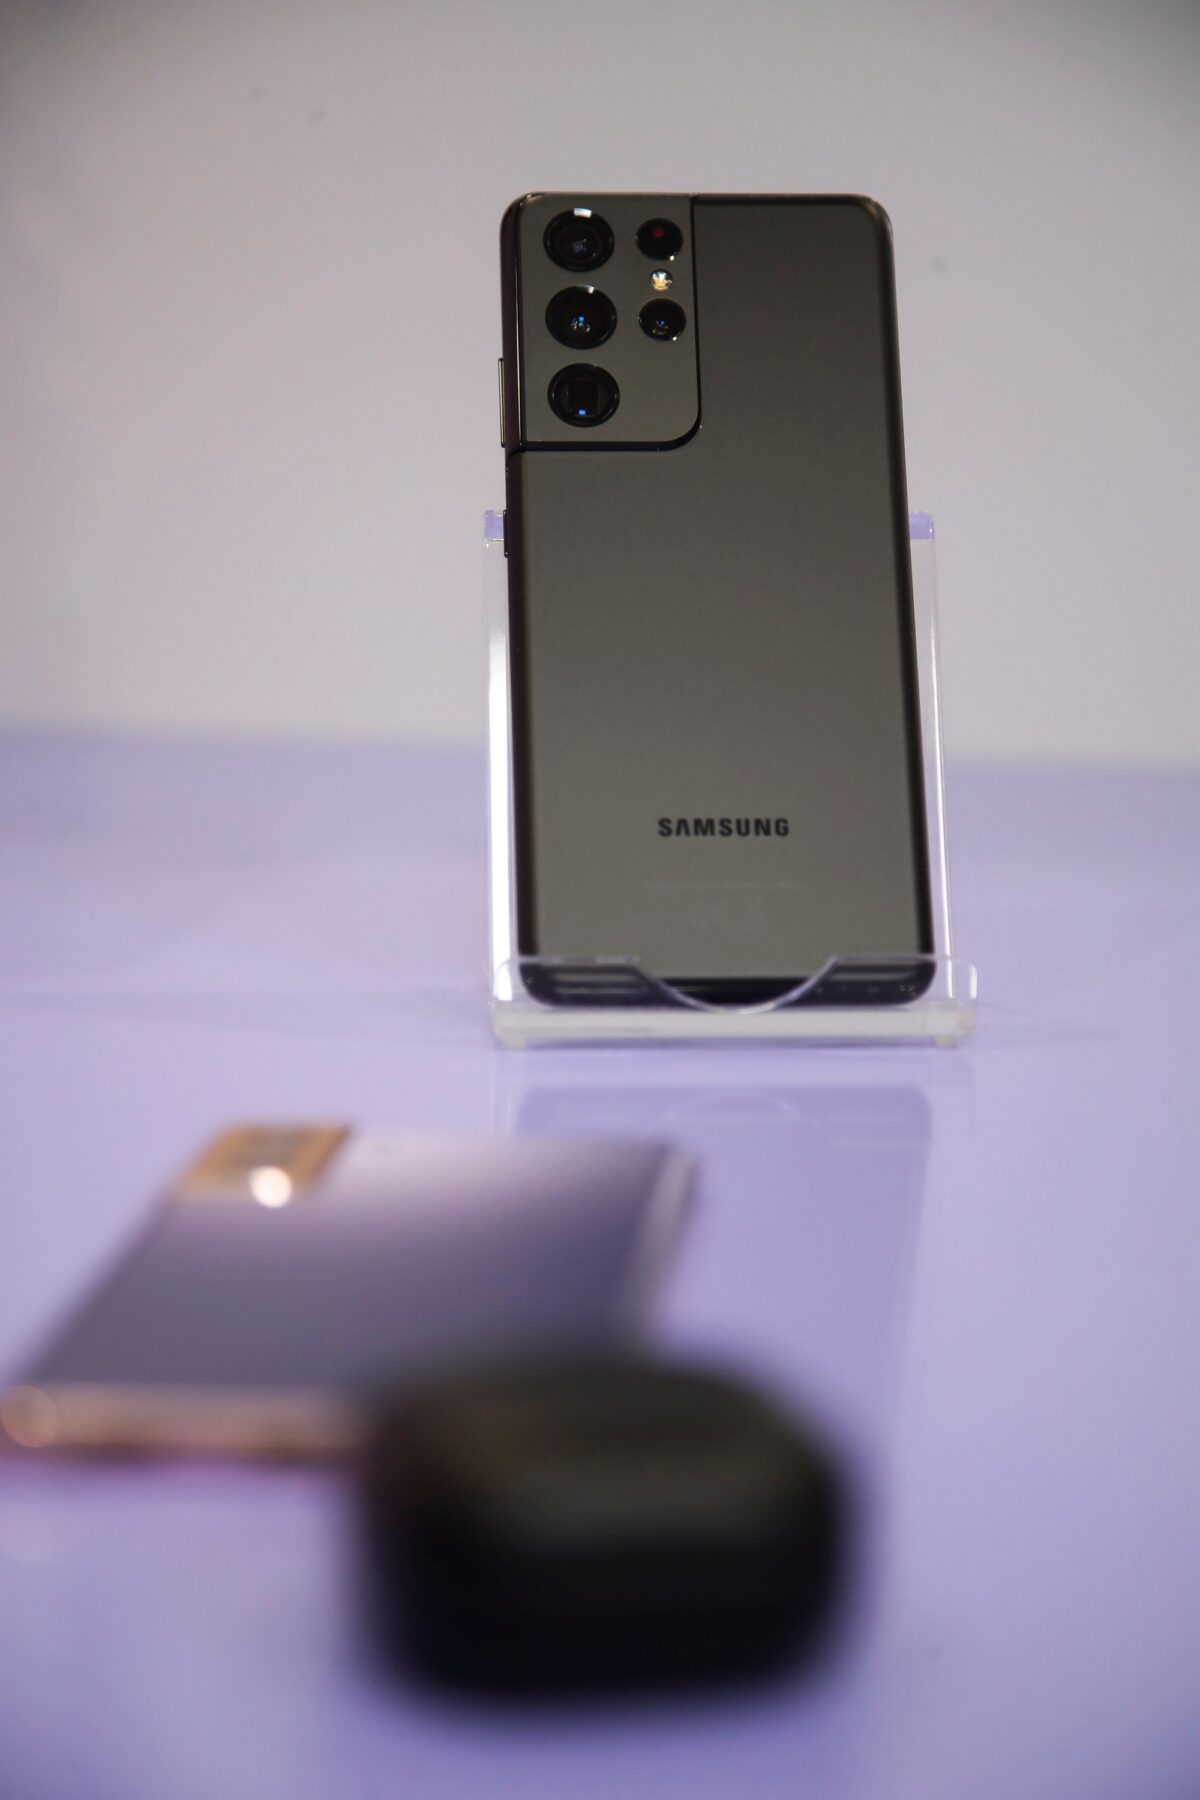 Vista del nuevo modelo de teléfono móvil Samsung S21 Ultra 5G, presentado el 14 de enero de 2021 en la CES.